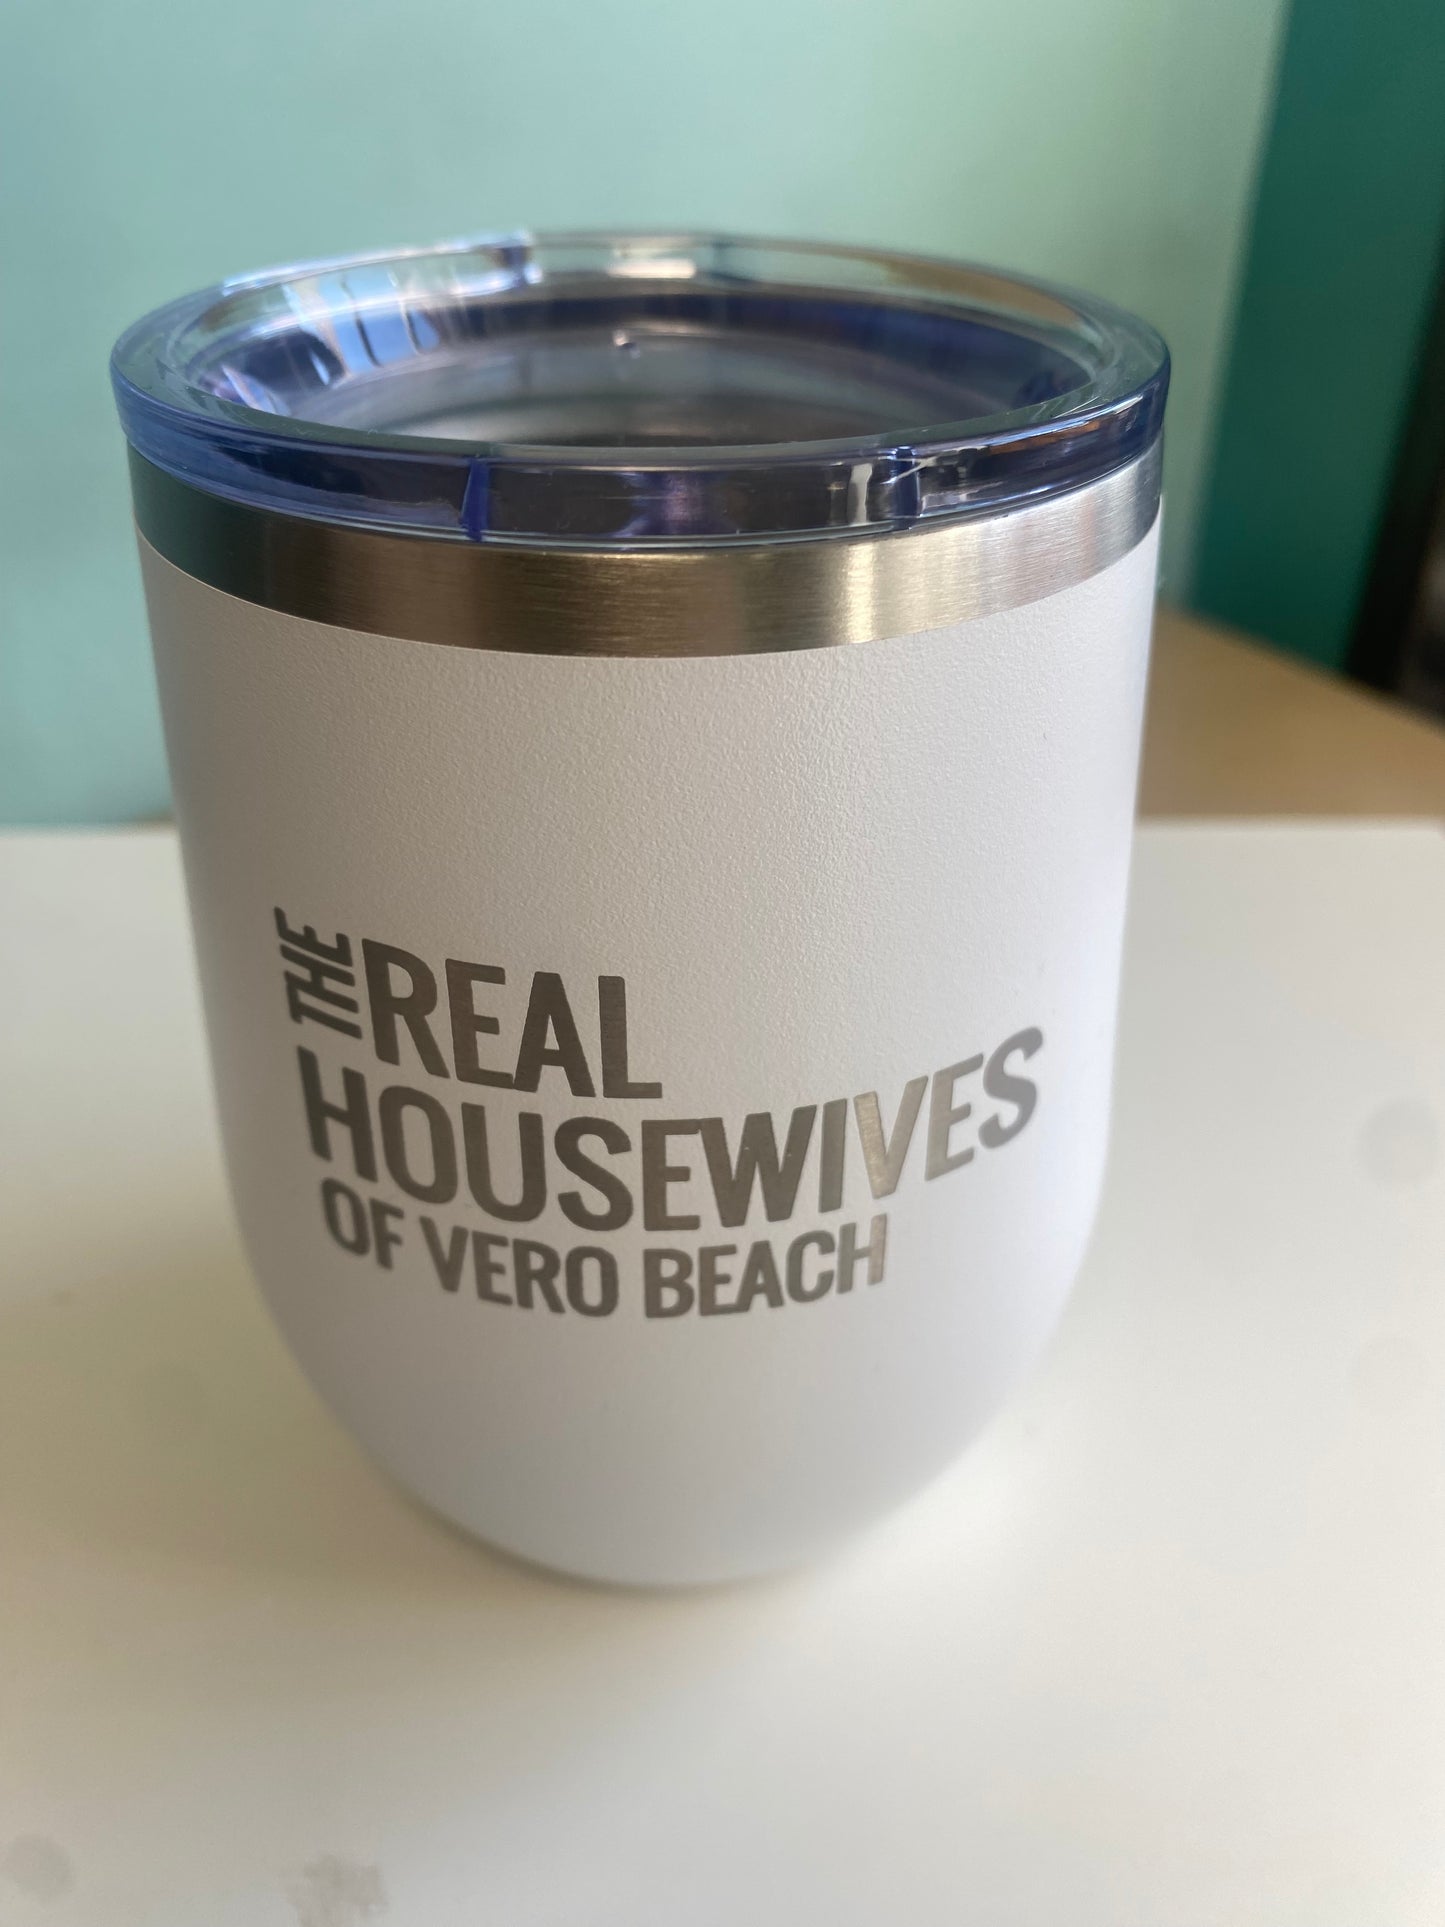 12 Oz Vero beach housewives Tumbler